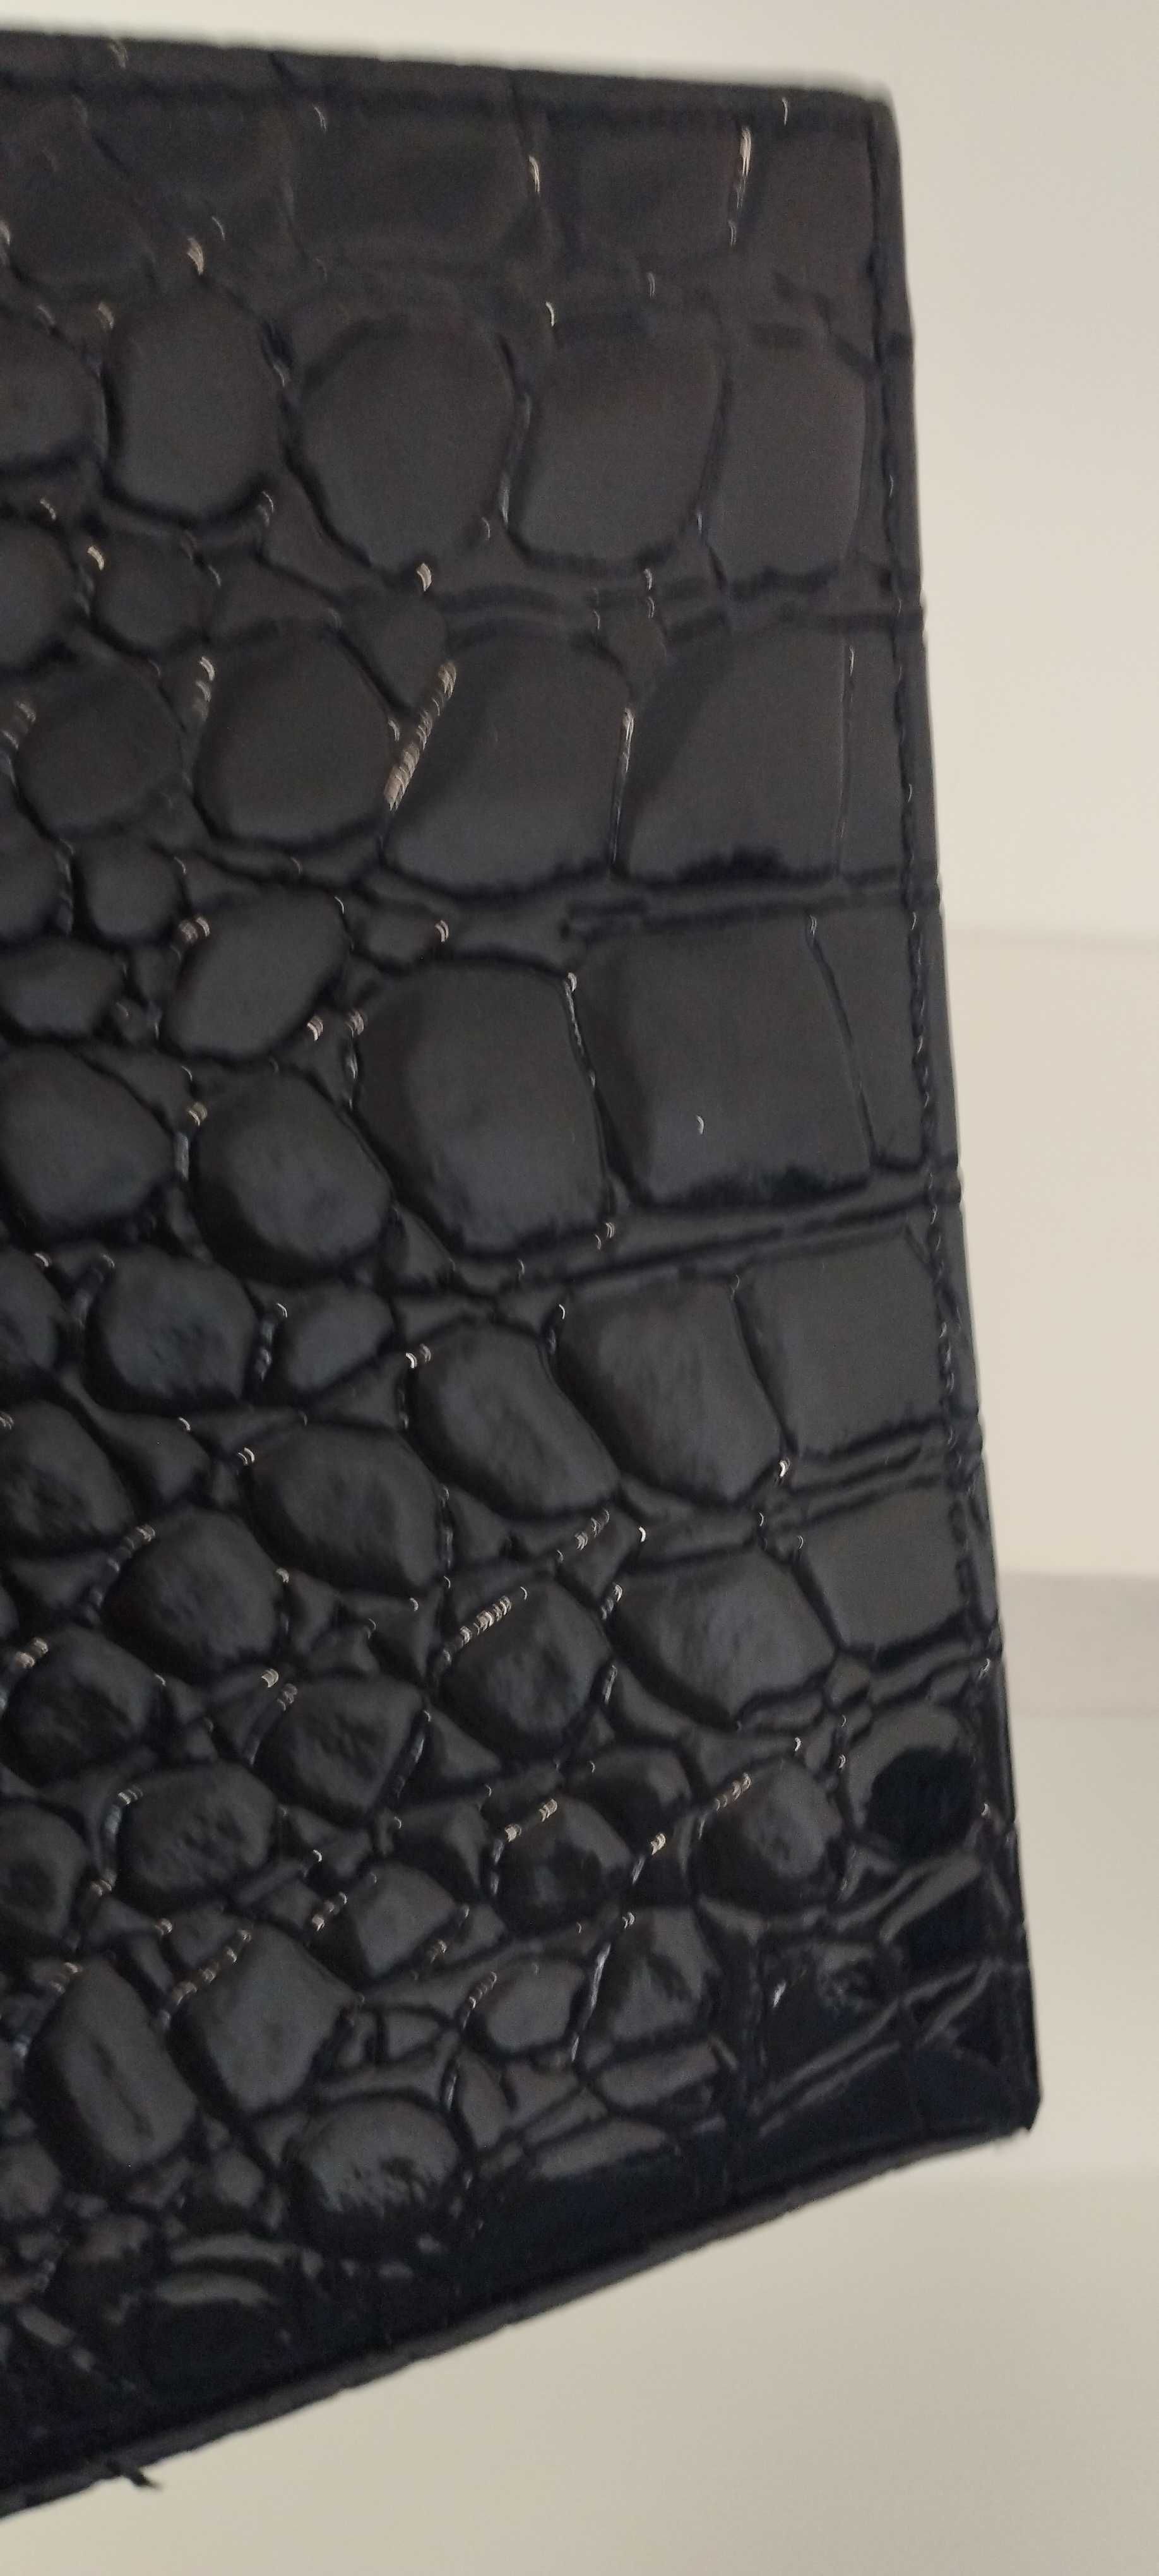 Elegancka, lakierowana, czarna kopertówka L'Oreal w zwierzęcy wzór